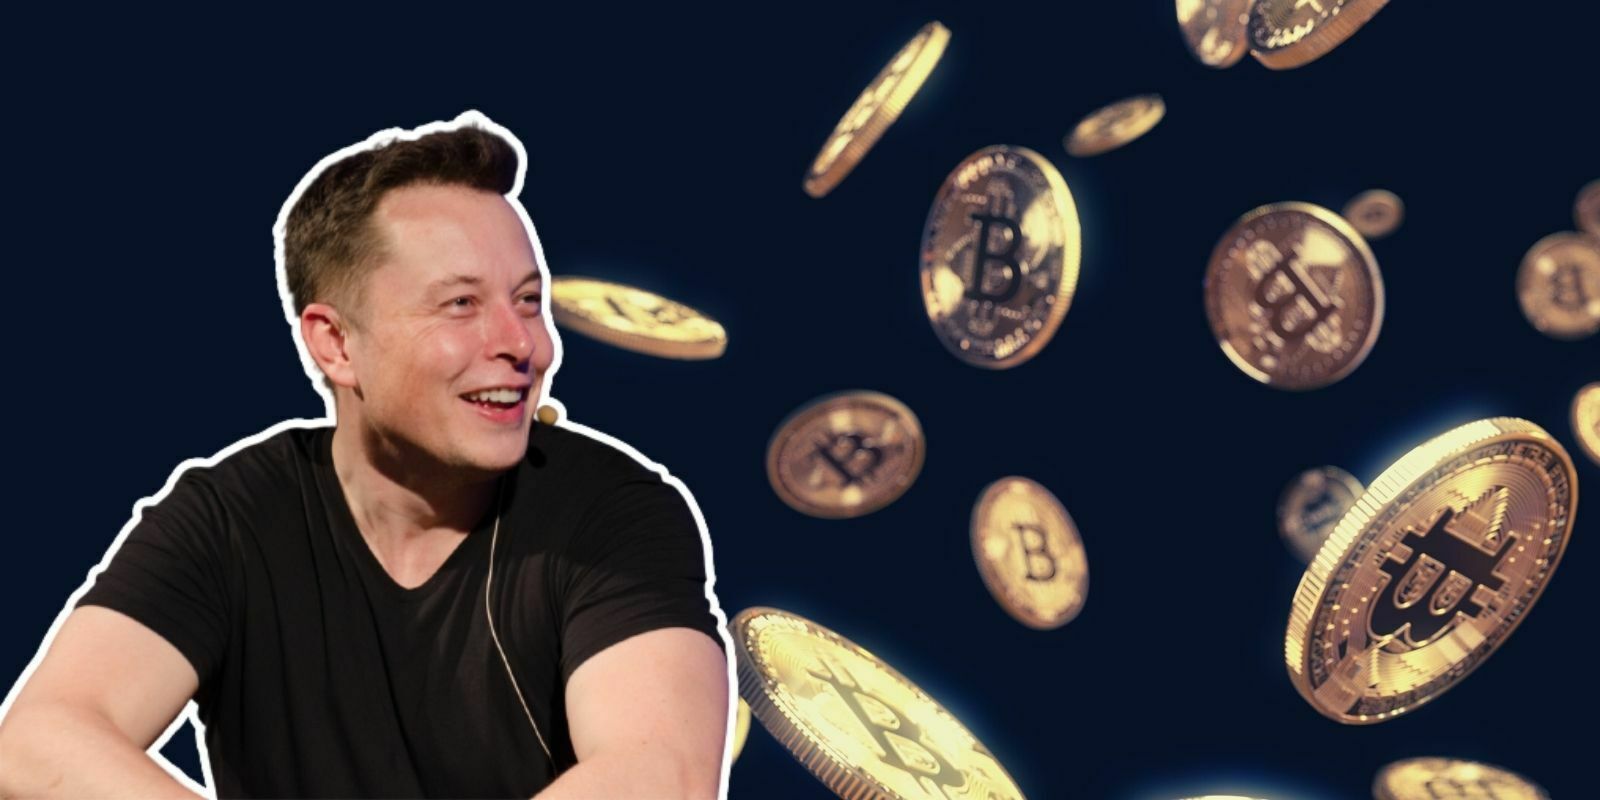 Elon Musk et ses entreprises détiendraient 5 milliards de dollars dans le Bitcoin, d'après Anthony Scaramucci